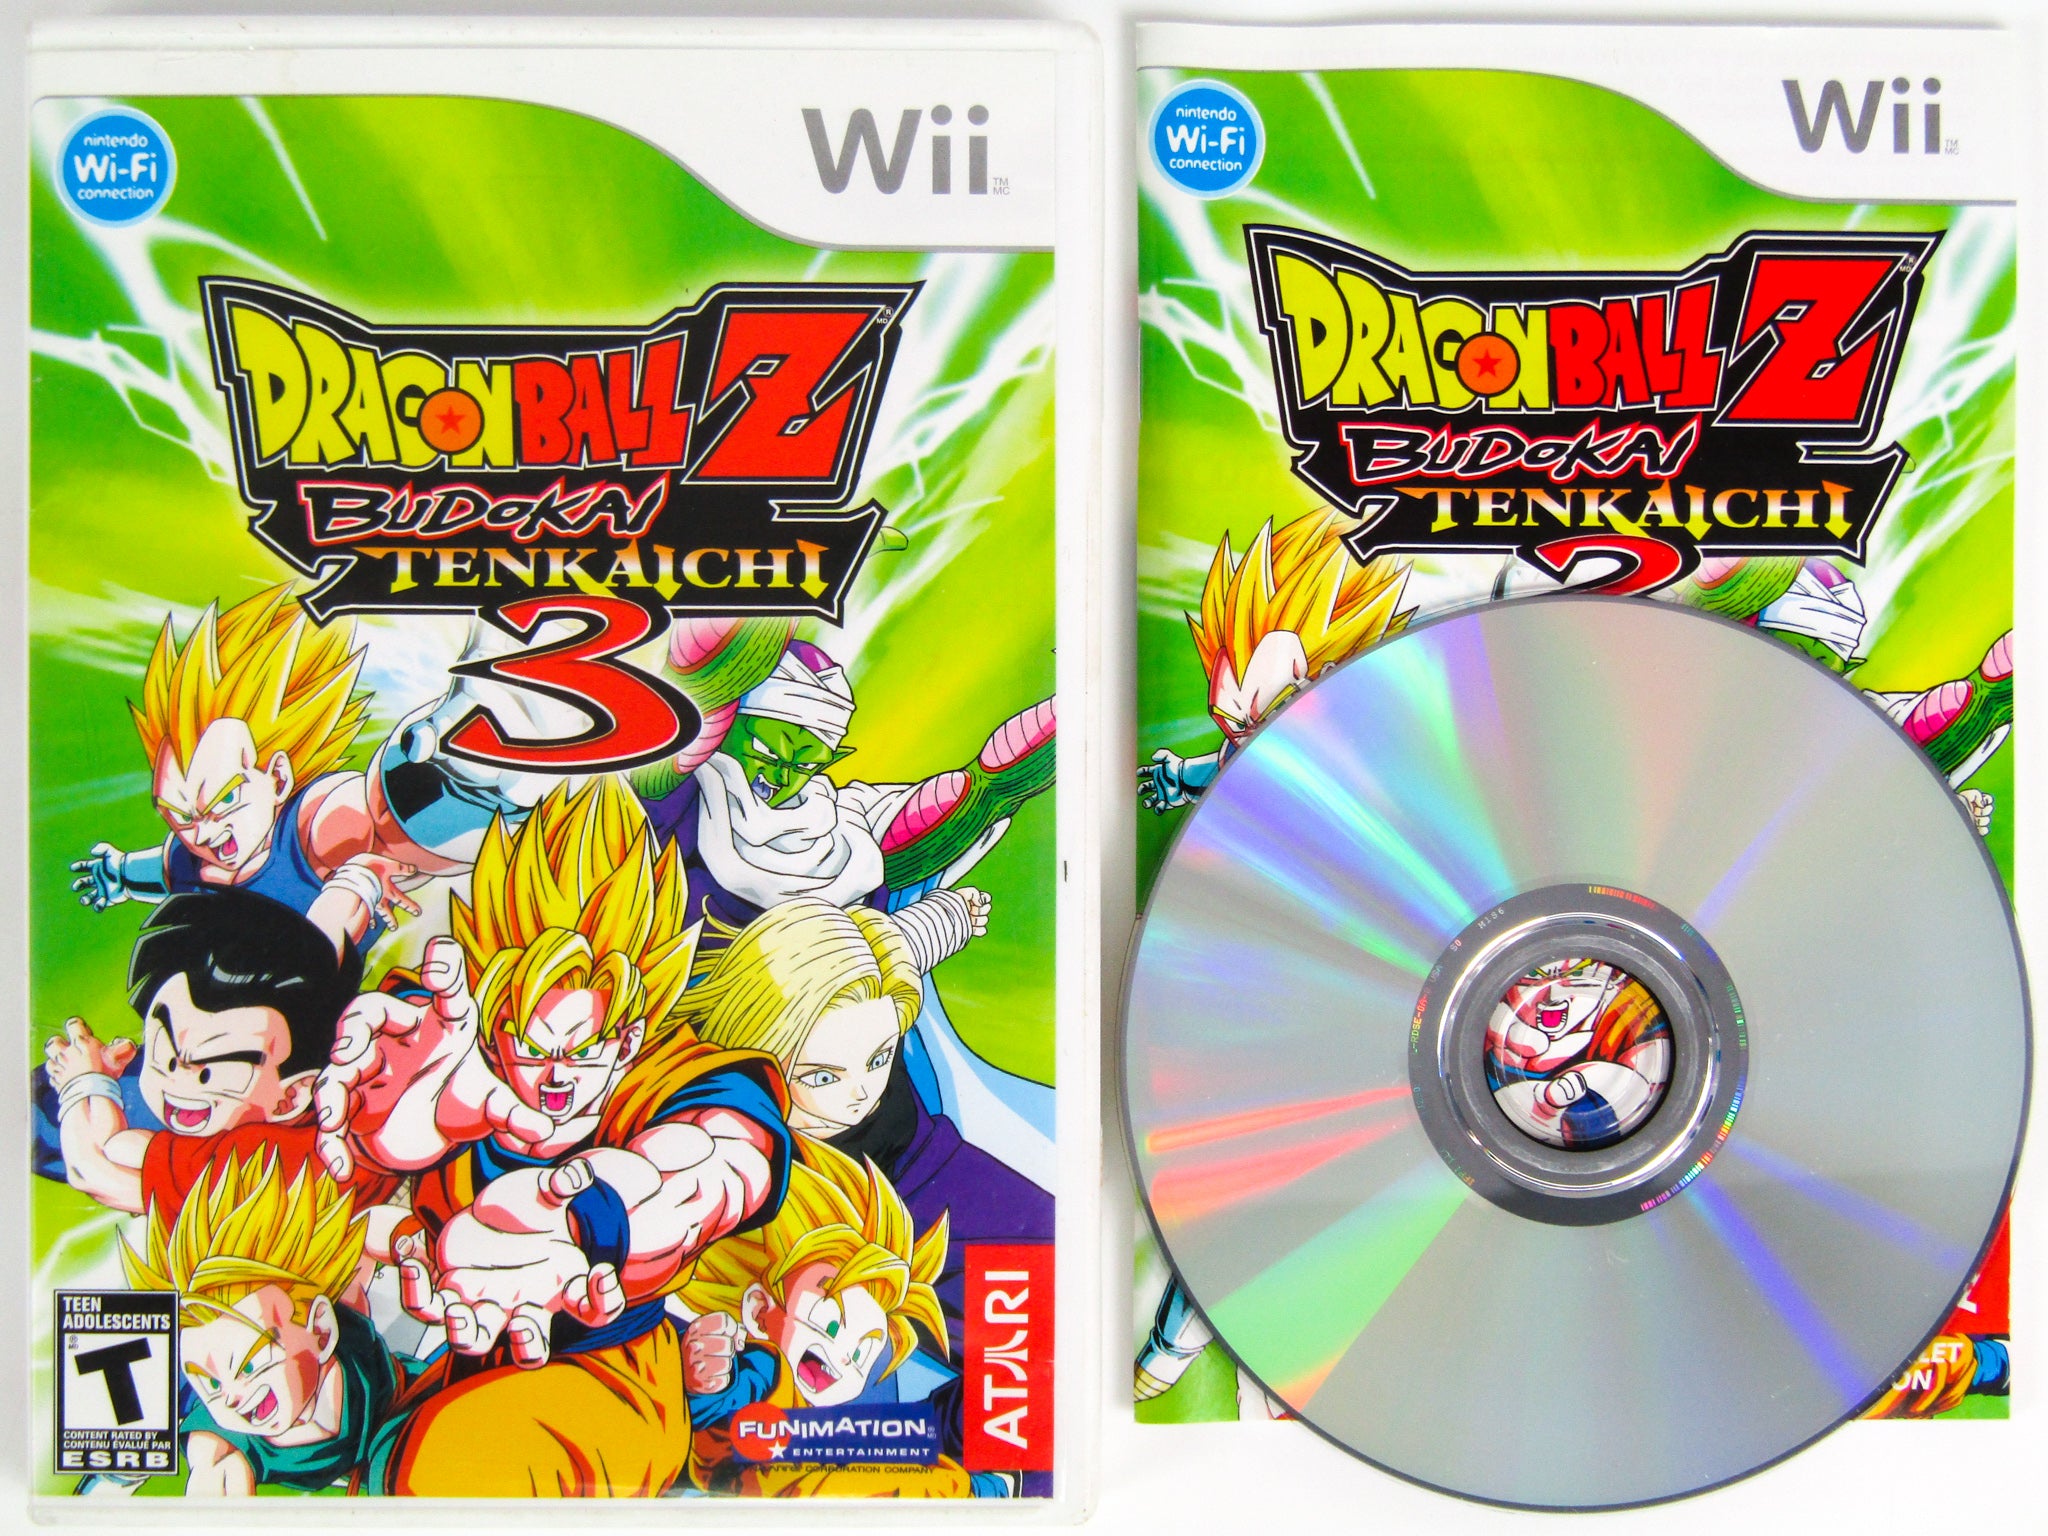 Dragon Ball Z: Budokai Tenkaichi 3 ROM - Nintendo Wii Game